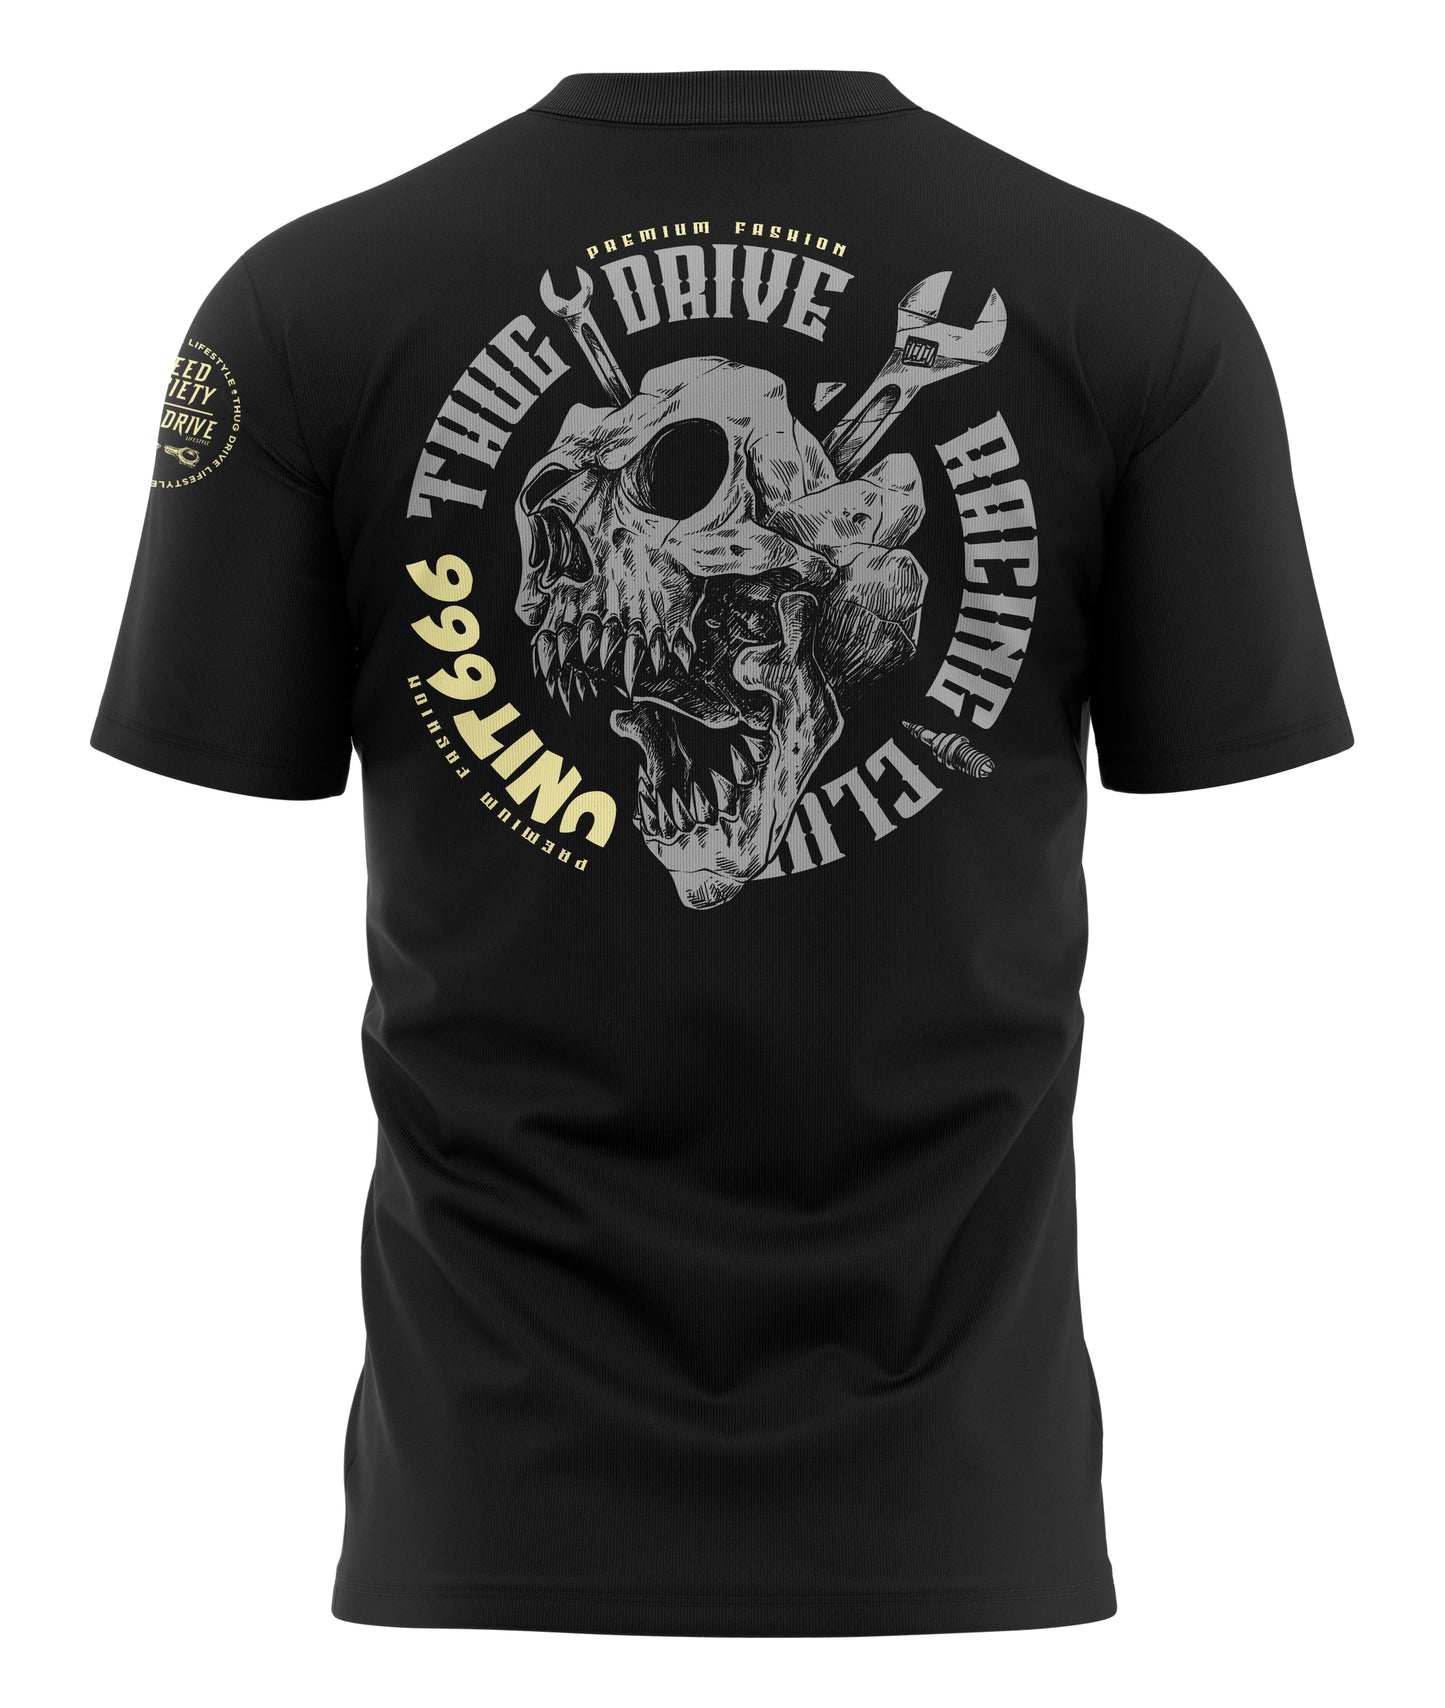 T-Shirt Ultimate Unit 666 Schwarz / Grau Gelb